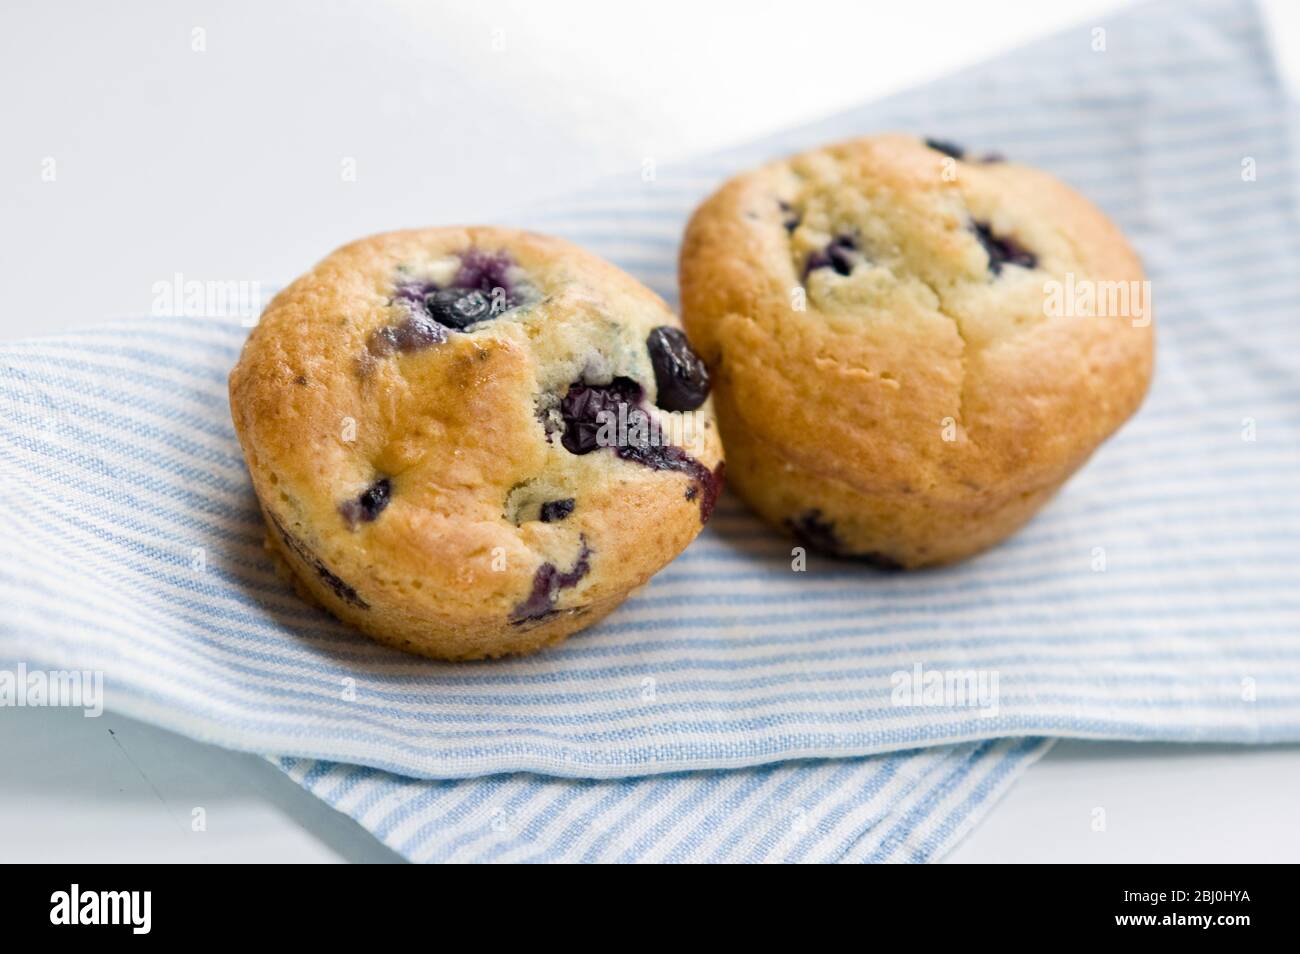 Frisch gebackene Blaubeer-Muffins auf blau gestreifter Serviette. - Stockfoto